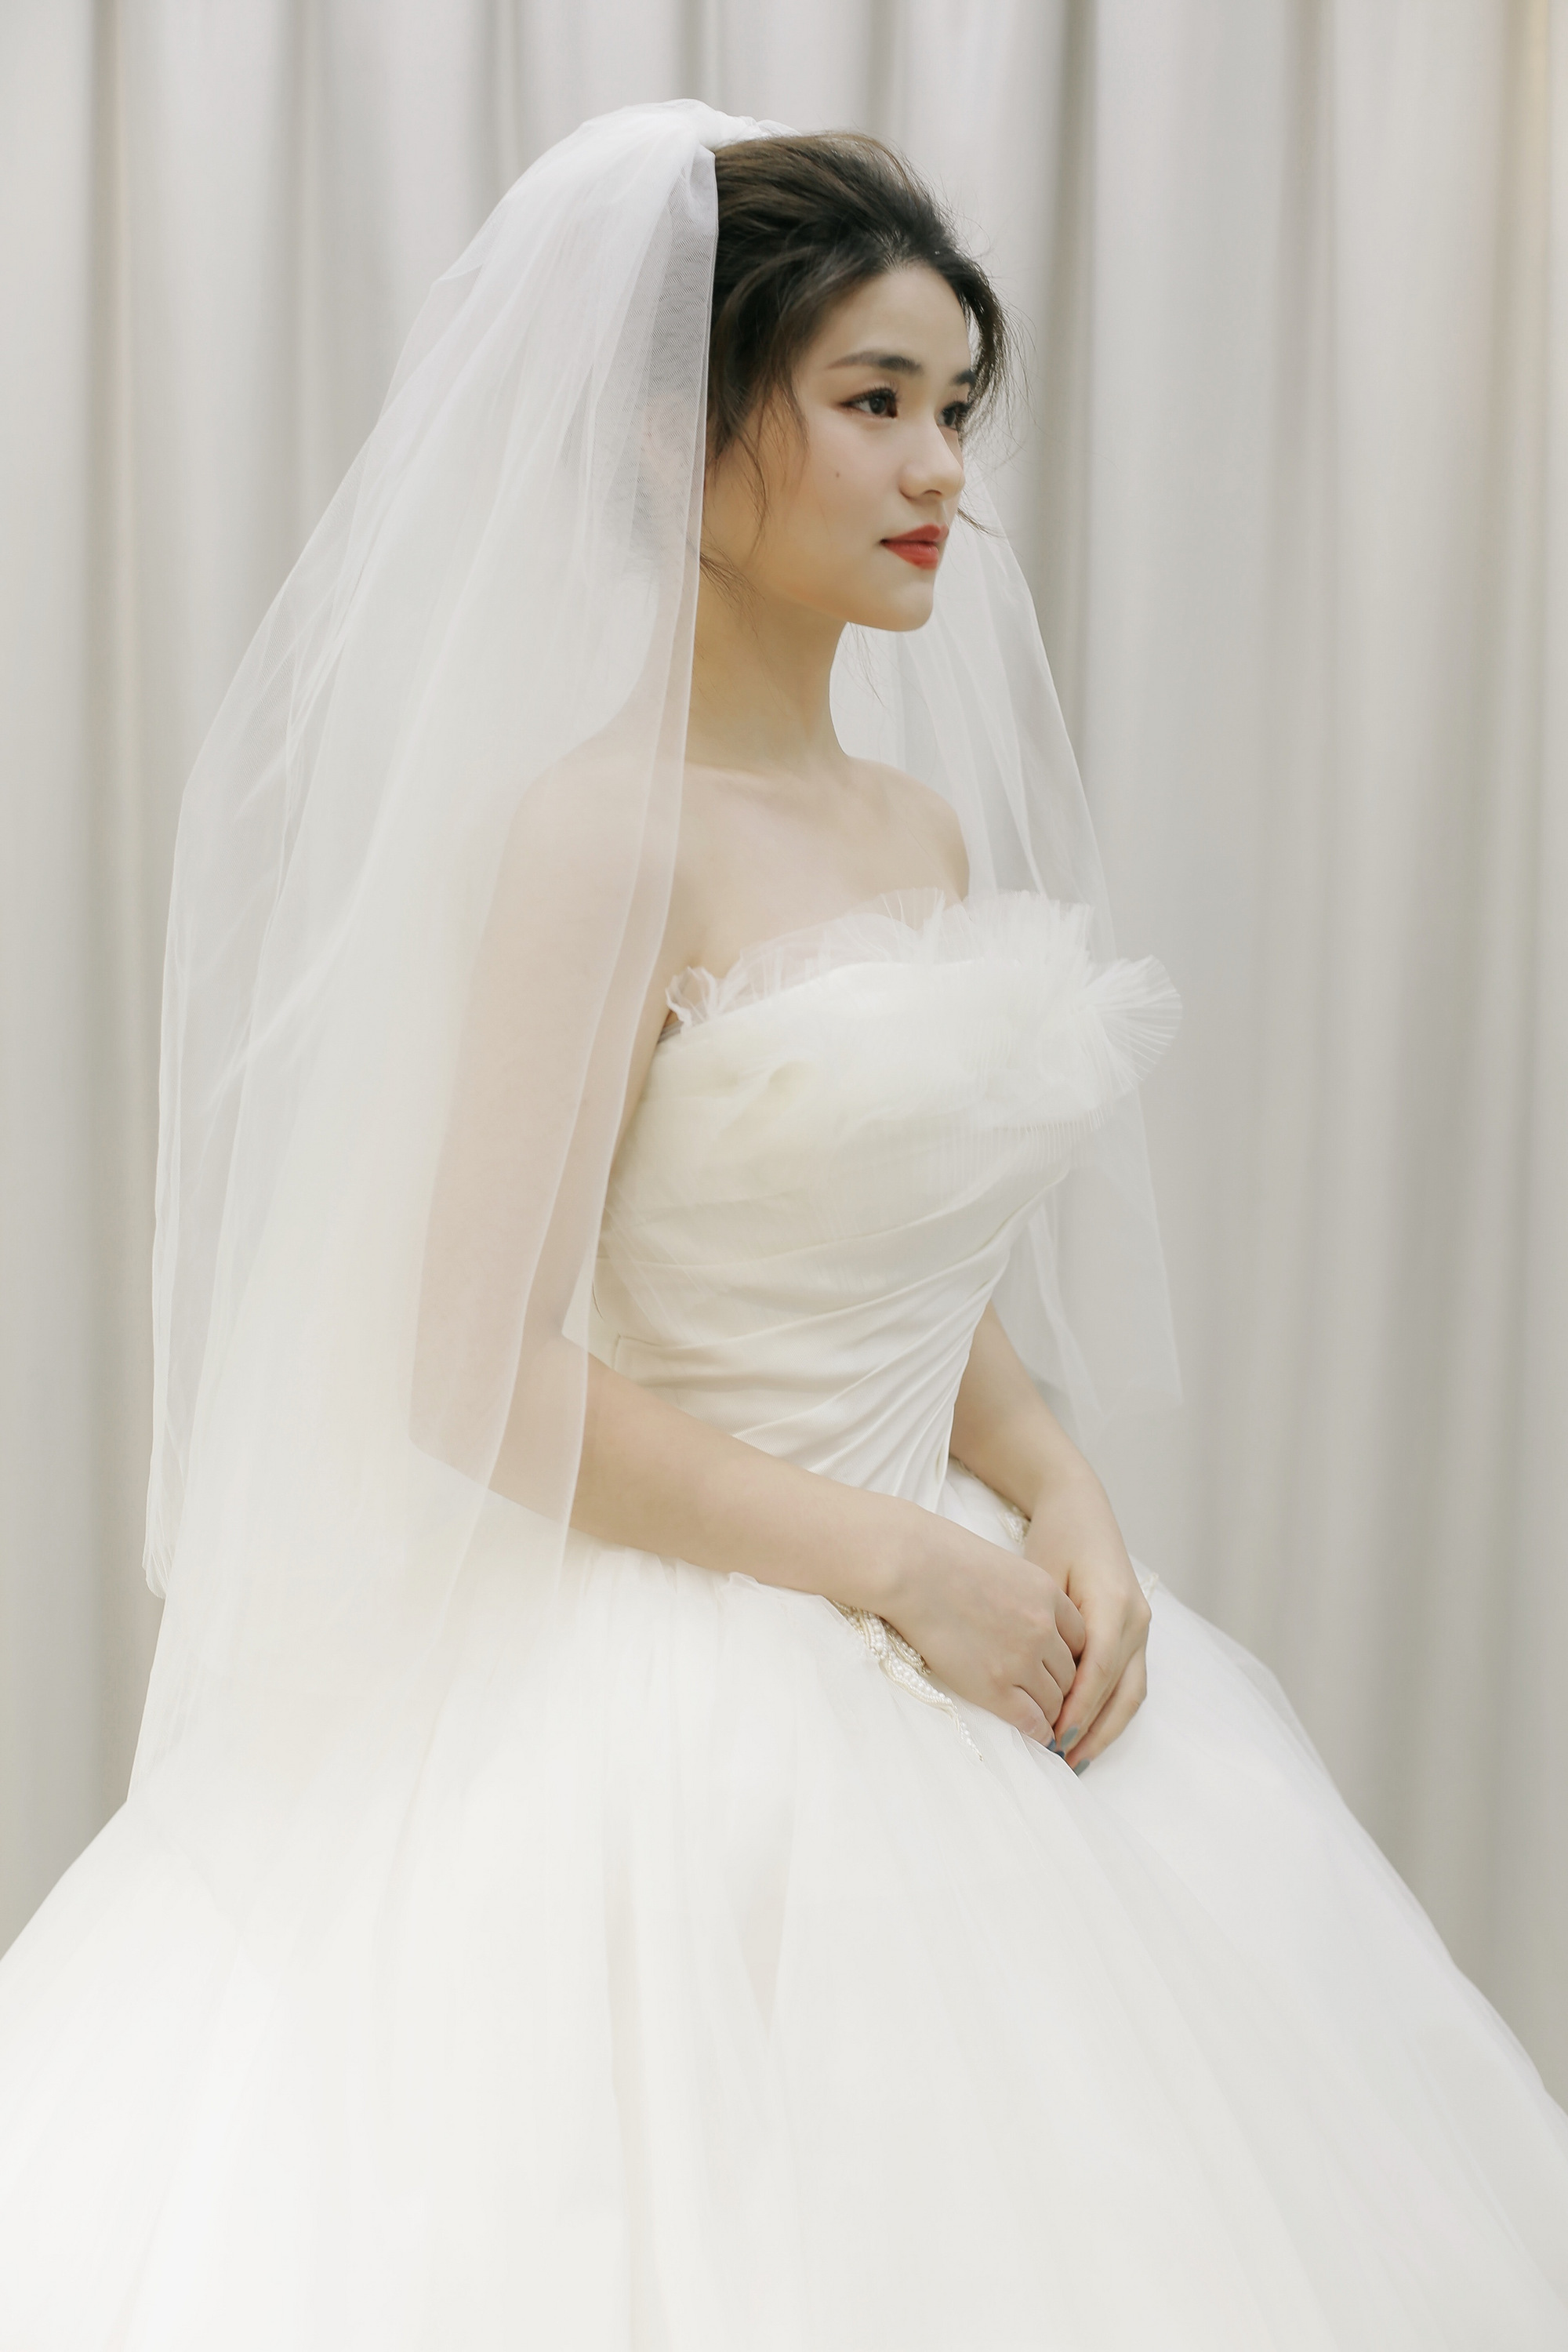 黑光网韩式新娘造型_黑光网最新新娘造型_黑光网2014新娘造型_鹊桥吧